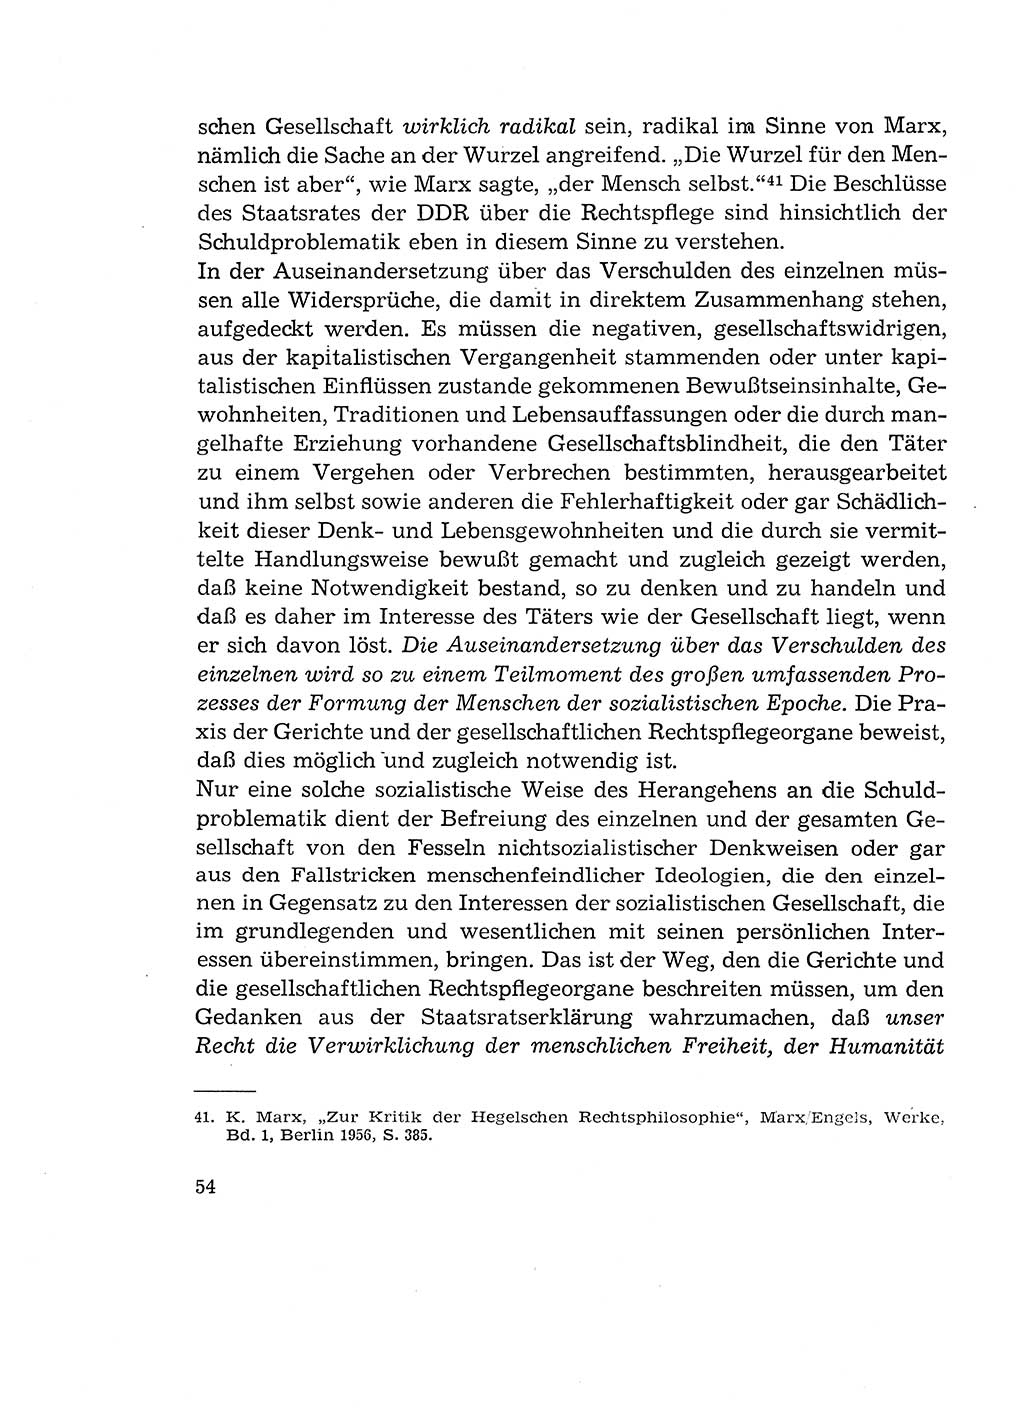 Verantwortung und Schuld im neuen Strafgesetzbuch (StGB) [Deutsche Demokratische Republik (DDR)] 1964, Seite 54 (Verantw. Sch. StGB DDR 1964, S. 54)